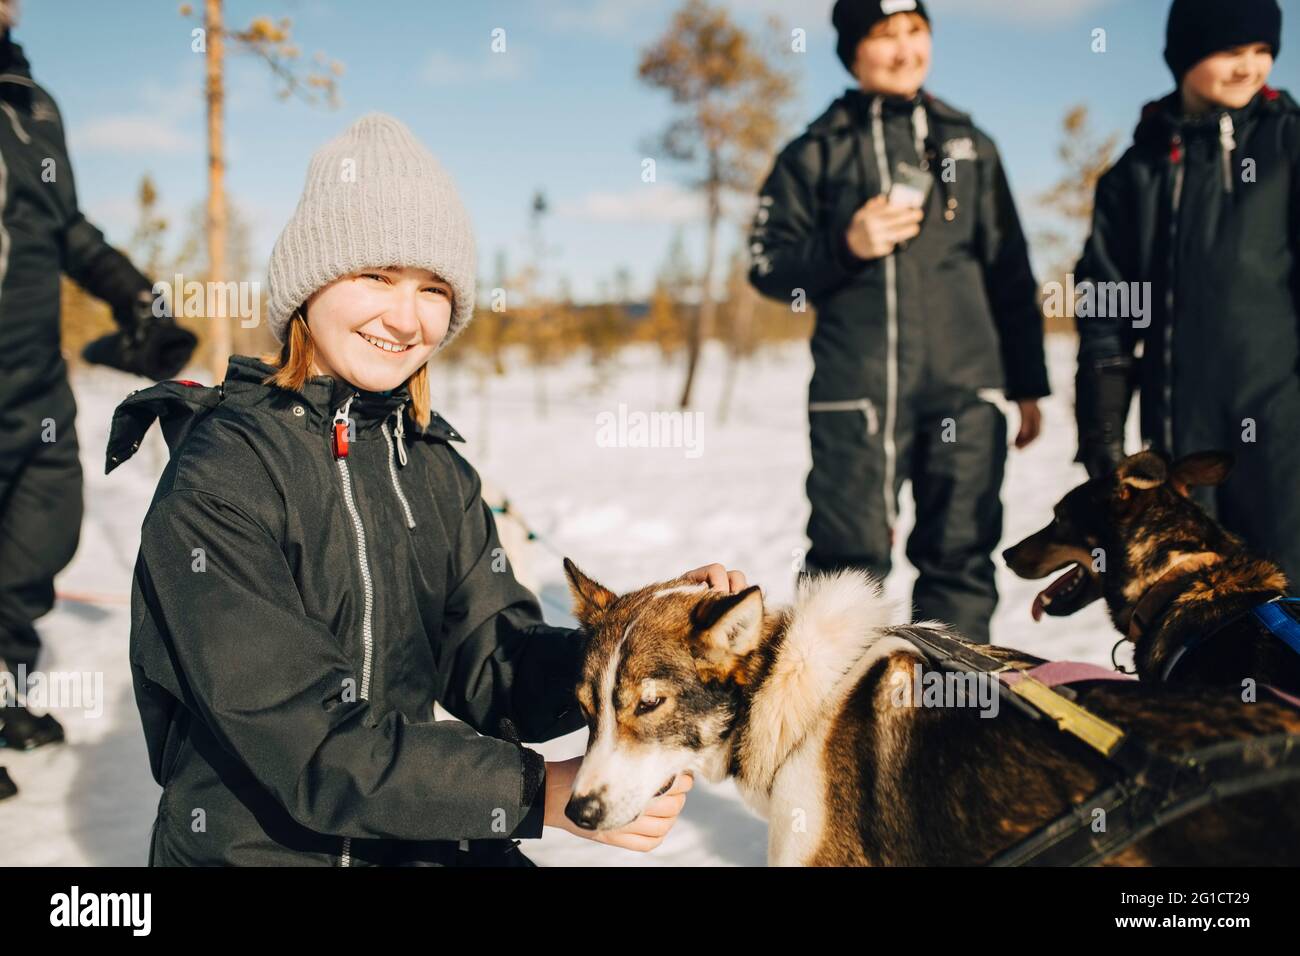 Portrait d'une adolescente souriante qui a caressé un chien husky pendant l'hiver Banque D'Images